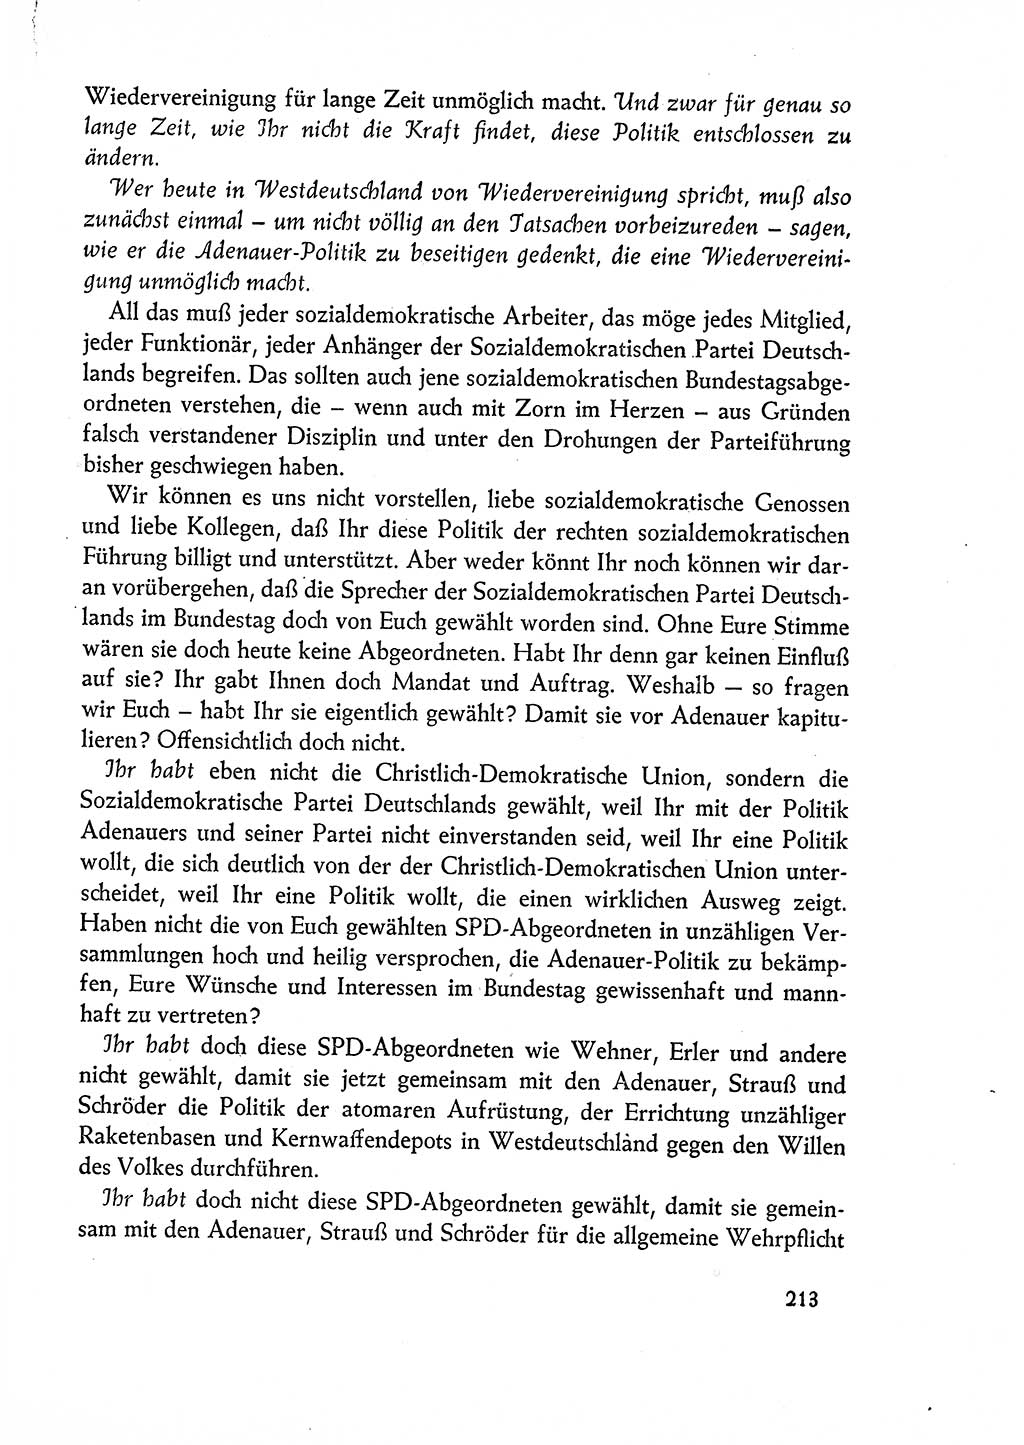 Dokumente der Sozialistischen Einheitspartei Deutschlands (SED) [Deutsche Demokratische Republik (DDR)] 1960-1961, Seite 213 (Dok. SED DDR 1960-1961, S. 213)